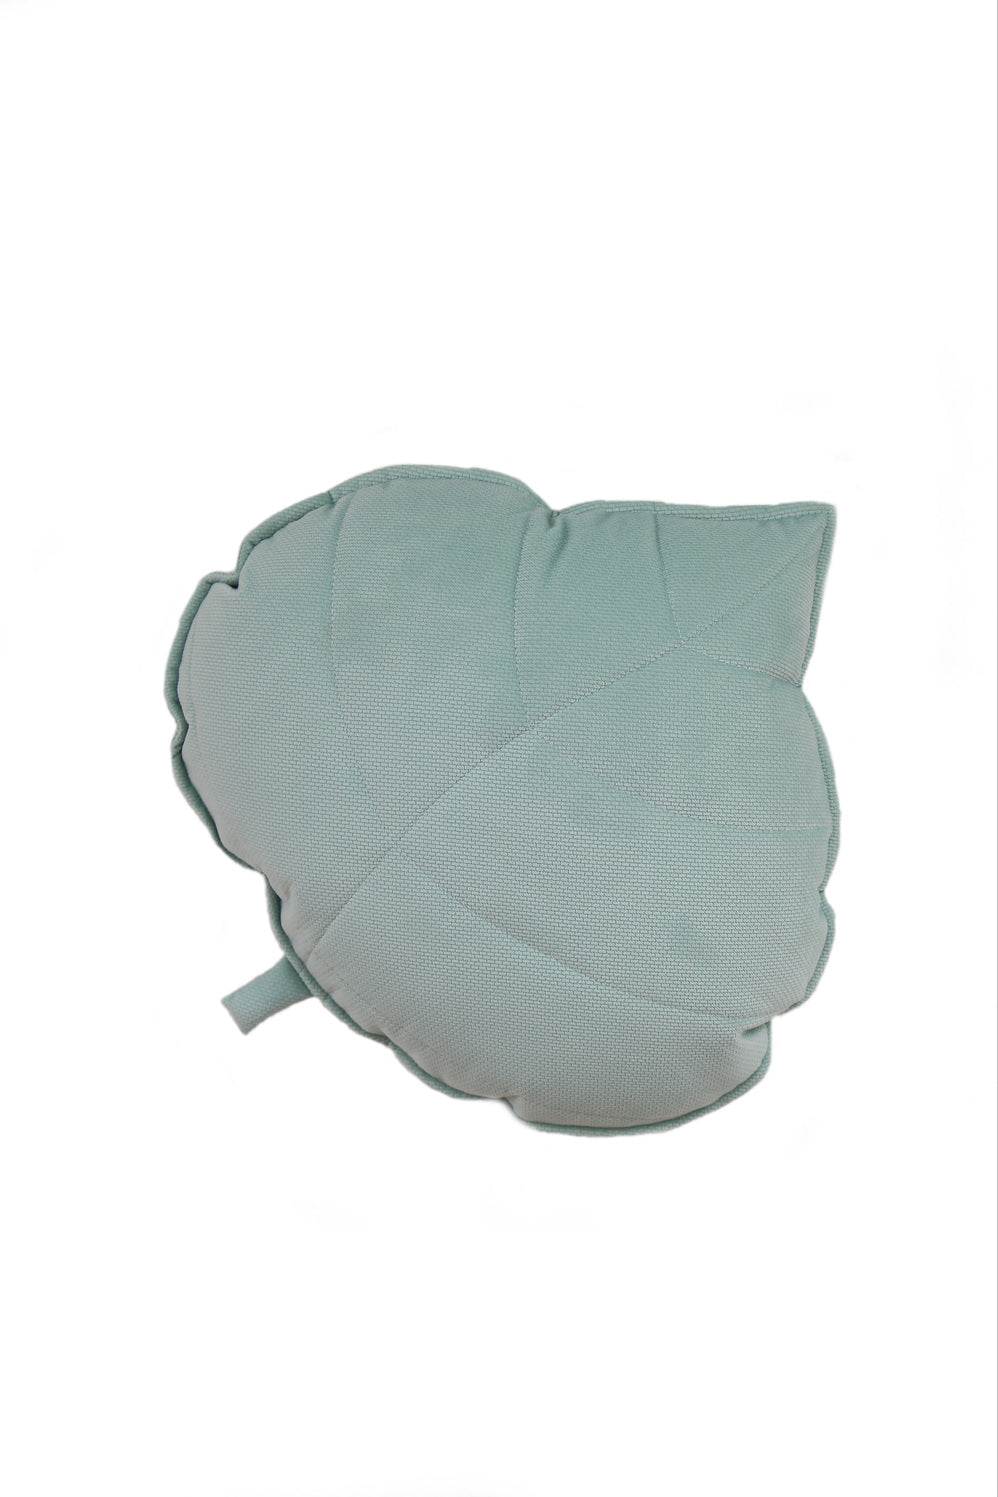 Velvet “Powder Mint” Leaf Pillow